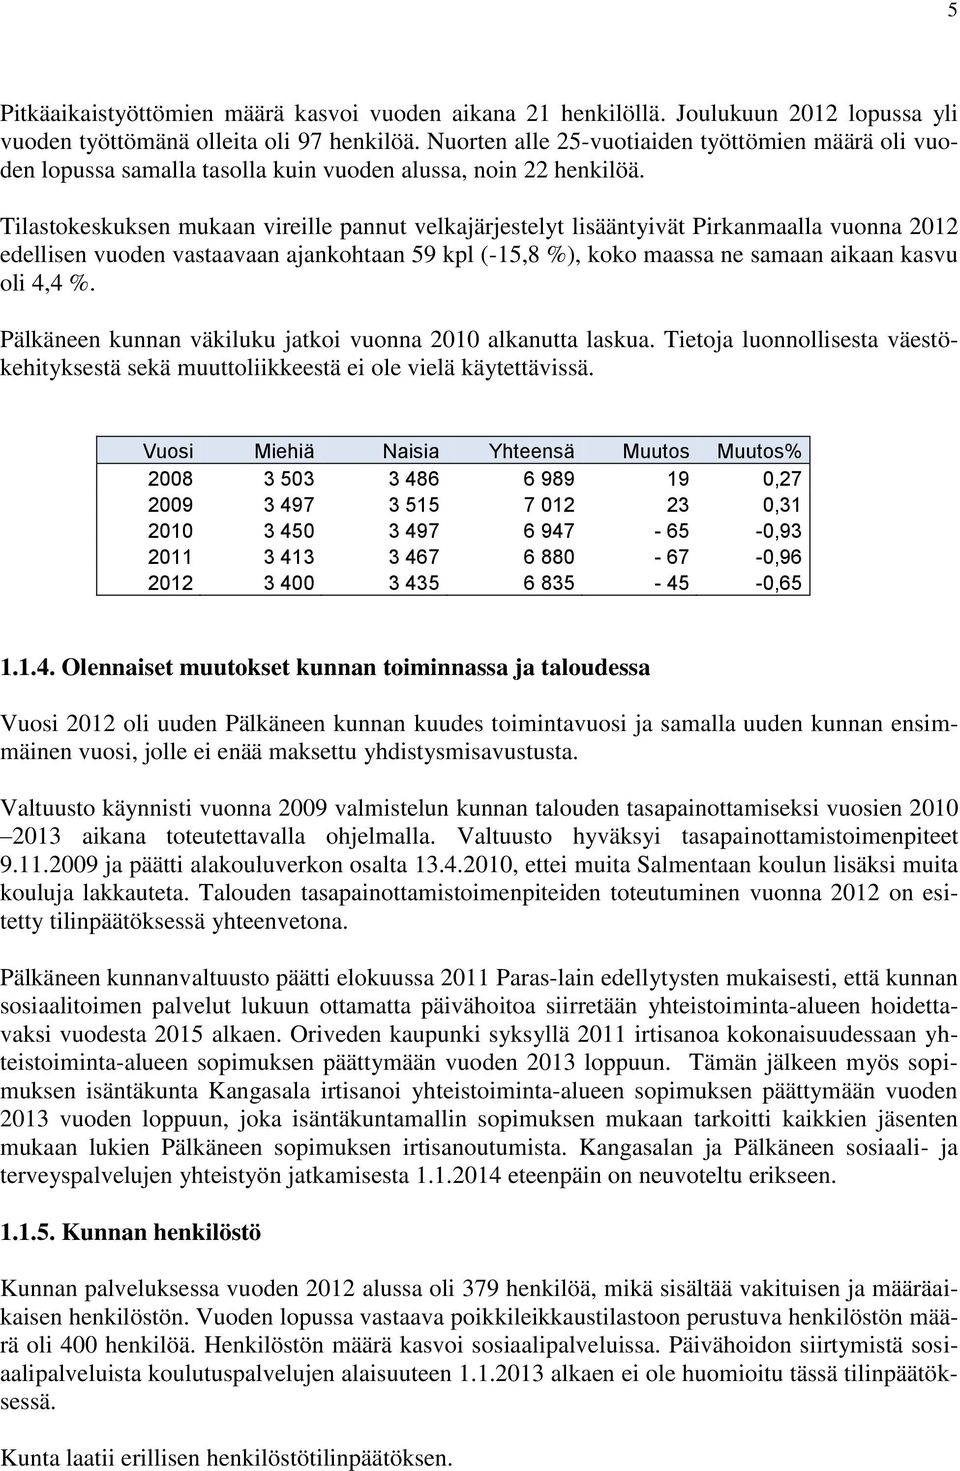 Tilastokeskuksen mukaan vireille pannut velkajärjestelyt lisääntyivät Pirkanmaalla vuonna 2012 edellisen vuoden vastaavaan ajankohtaan 59 kpl (-15,8 %), koko maassa ne samaan aikaan kasvu oli 4,4 %.